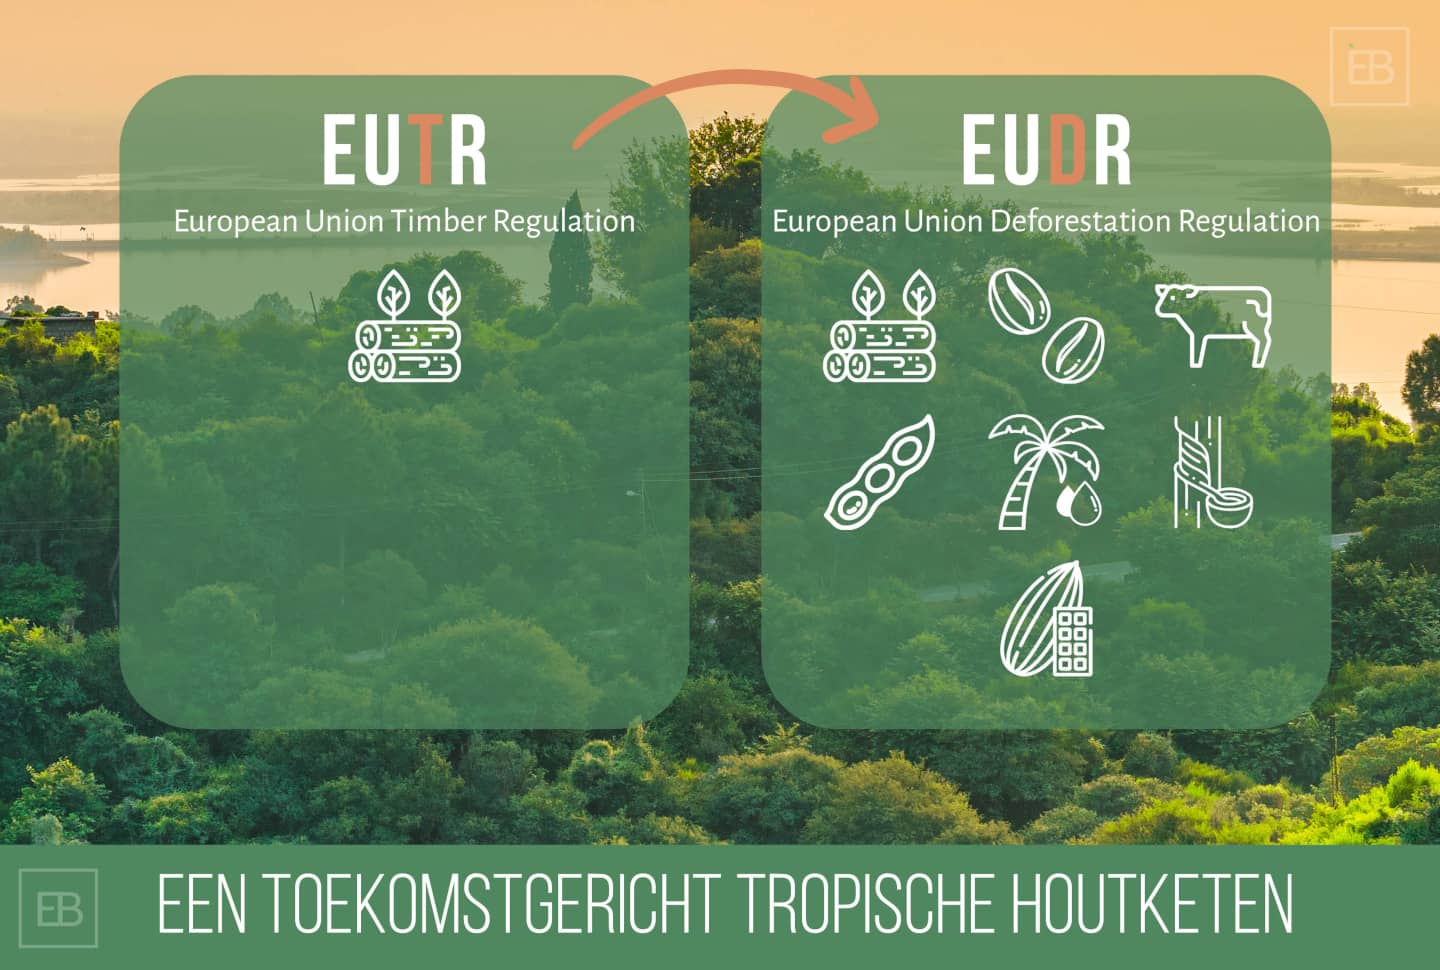 EUDR: EU Deforestation Regulation